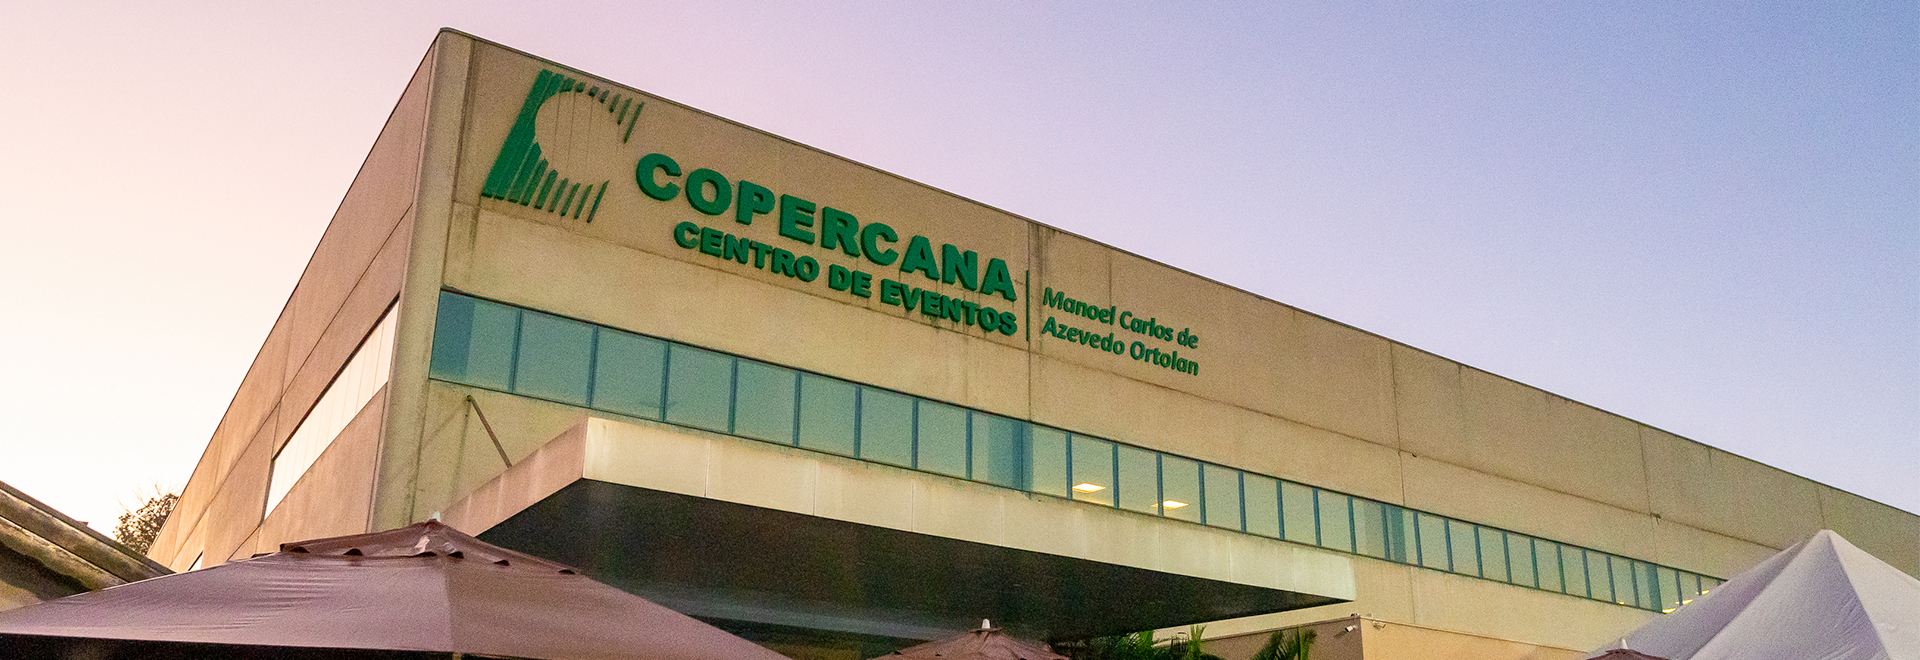 Fachada - Centro de Eventos Copercana